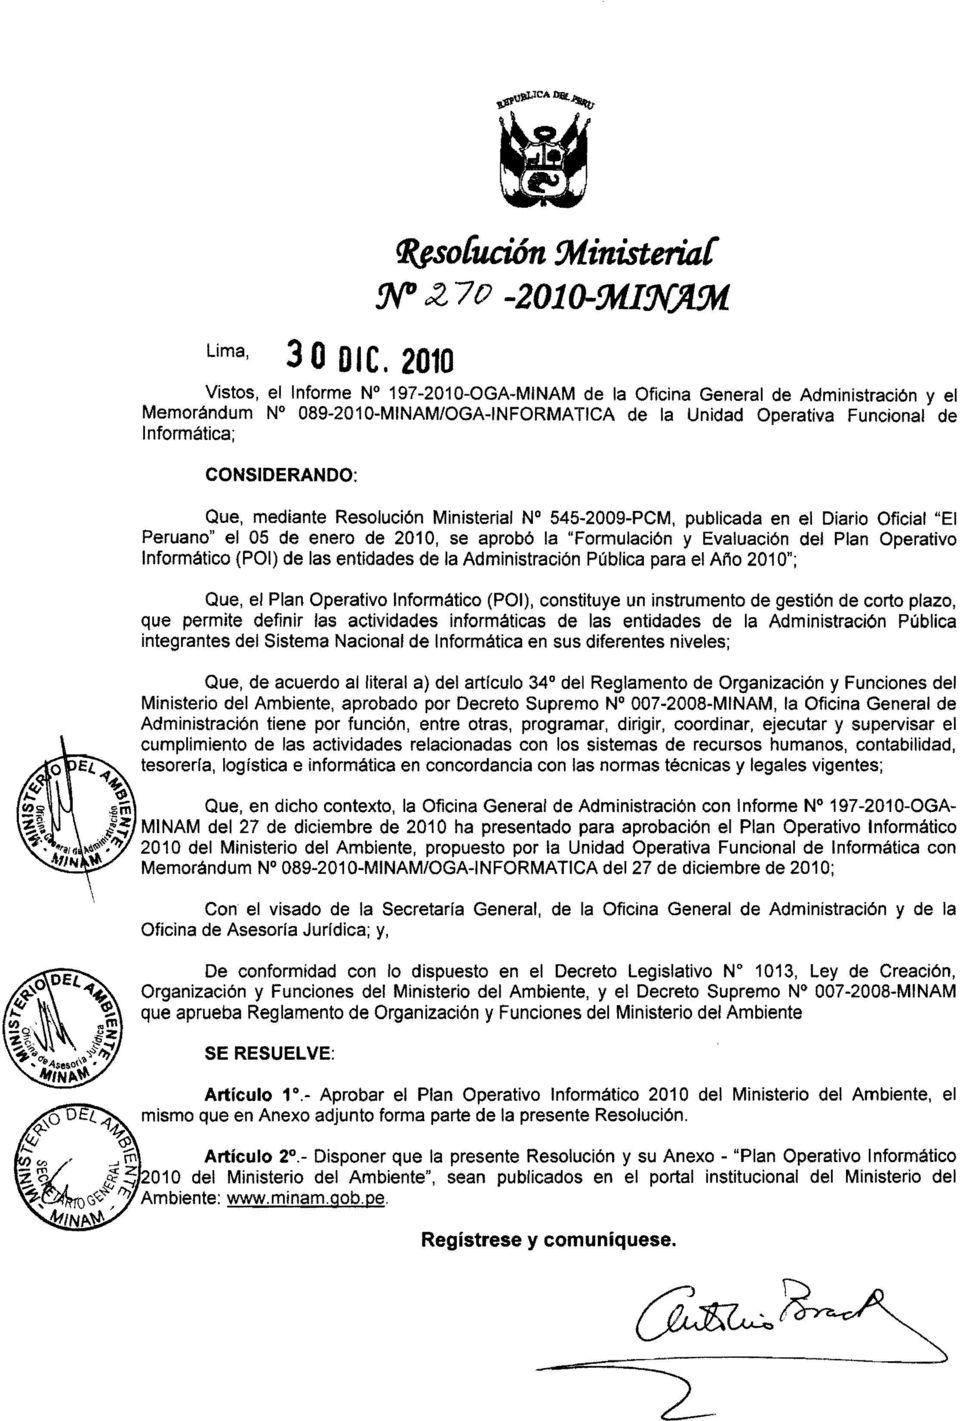 Que, mediante Resolución Ministerial N 545-2009-PCM, publicada en el Diario Oficial "El Peruano" el 05 de enero de 2010, se aprobó la "Formulación y Evaluación del Plan Operativo Informático (POI) de